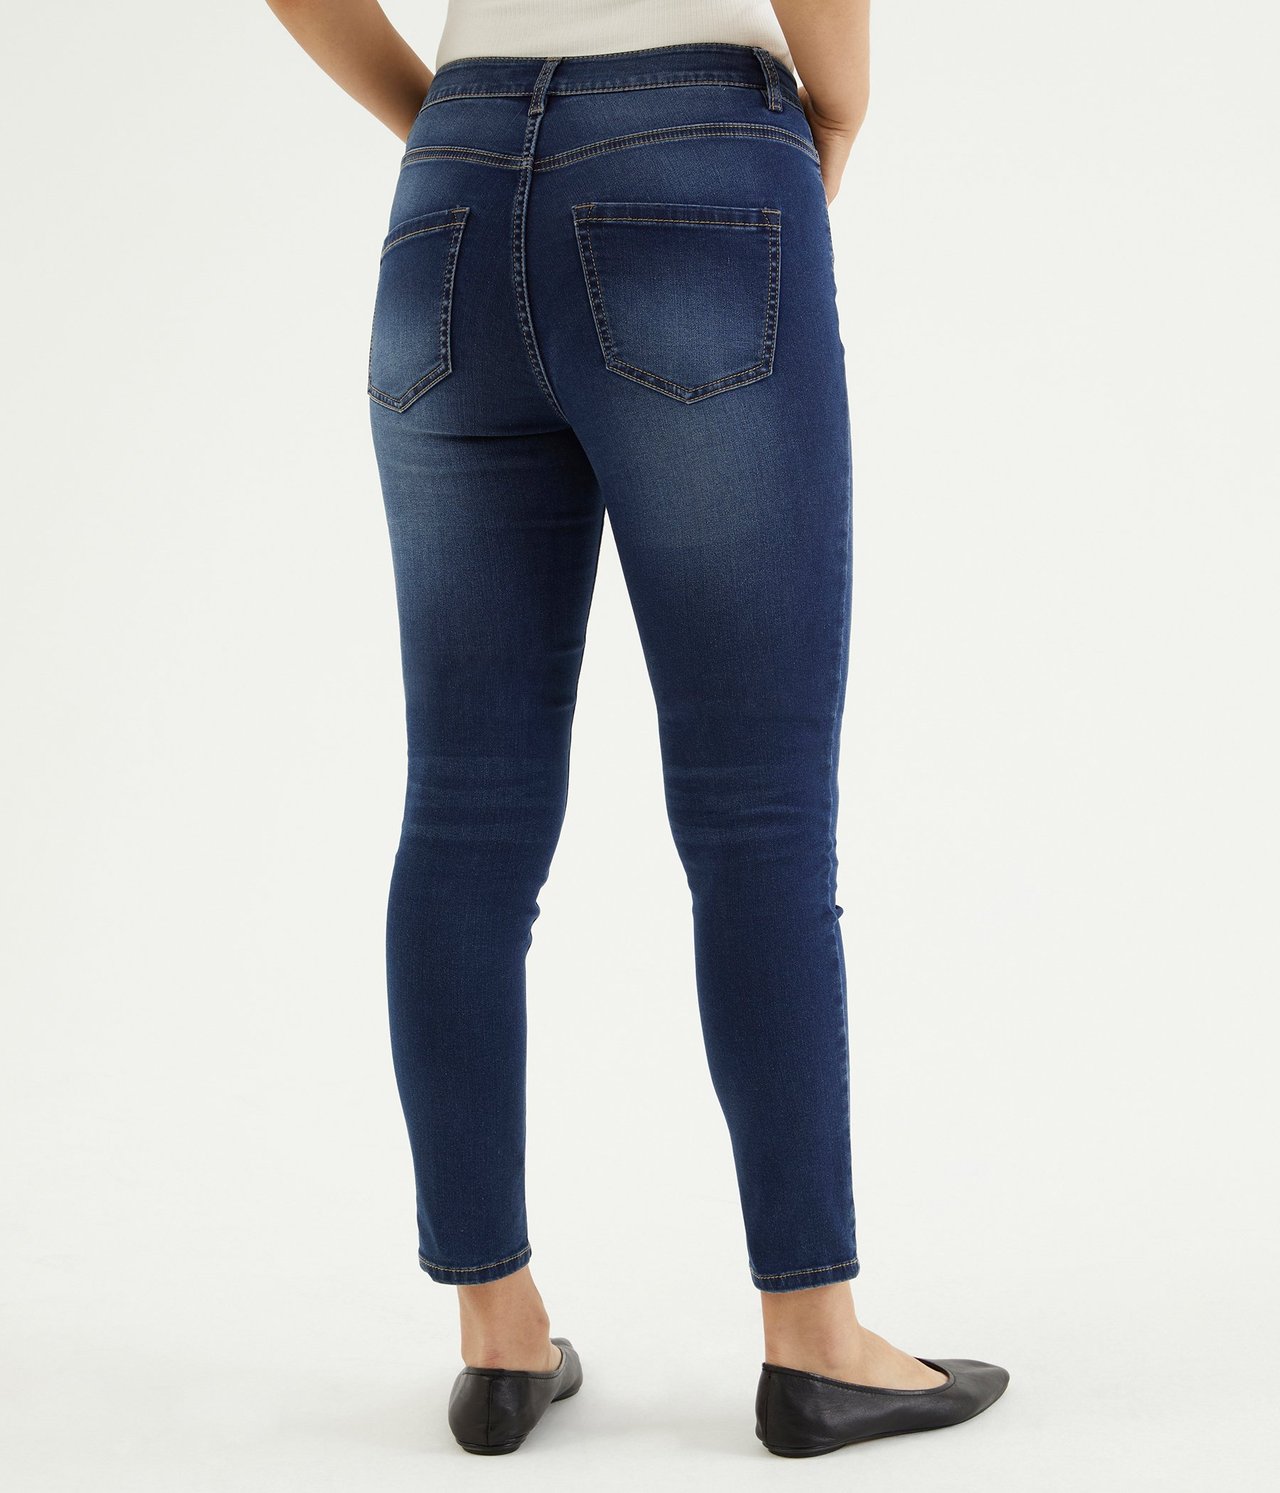 Super slim jeans short leg Tumma denimi - null - 0